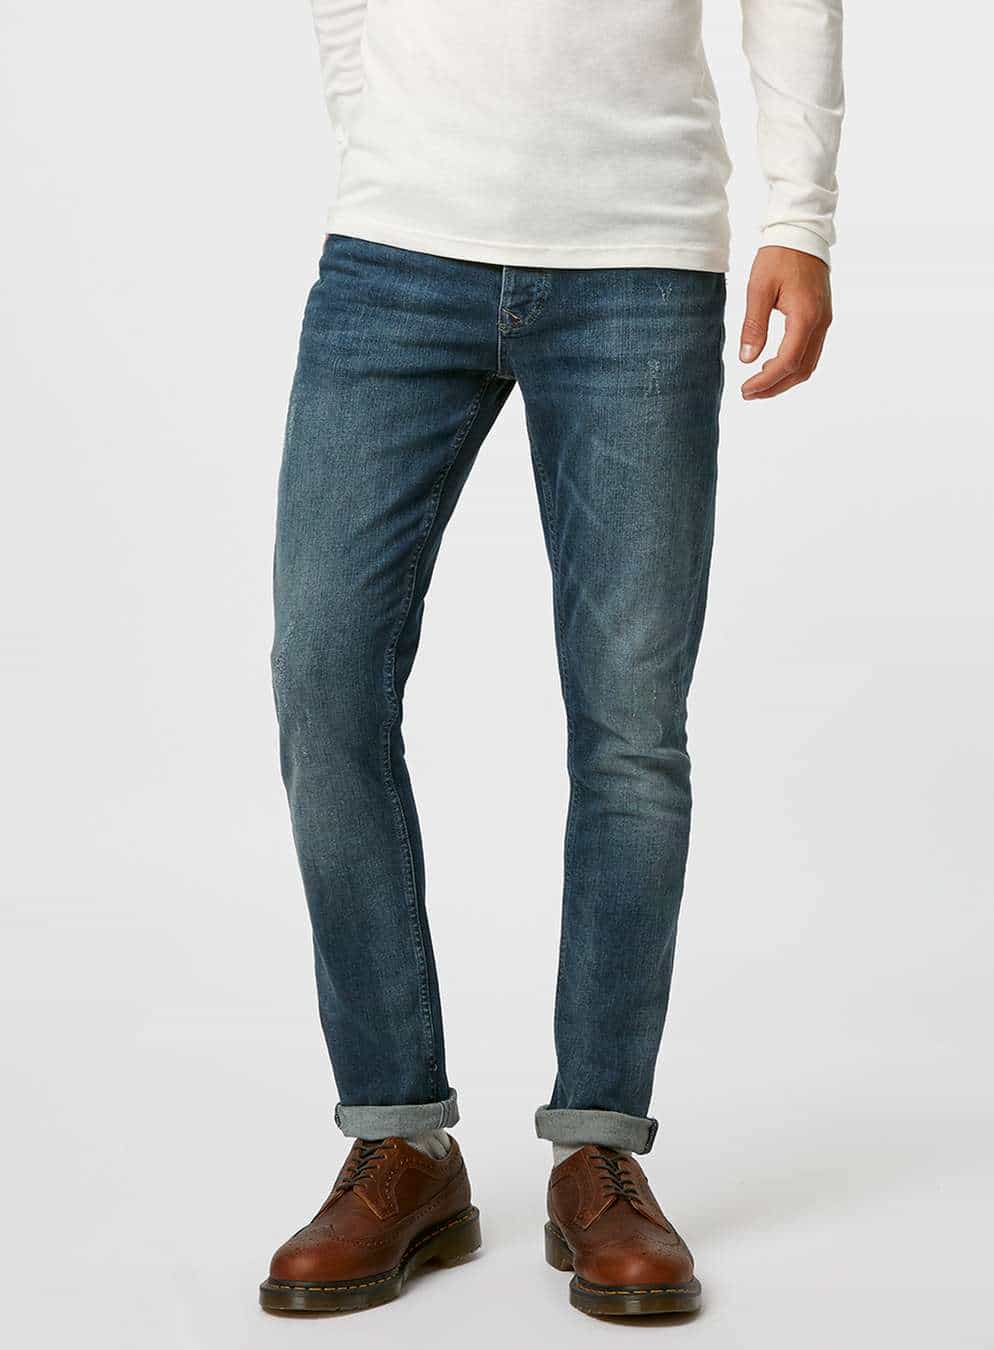 jeans trends 2017 fits heren